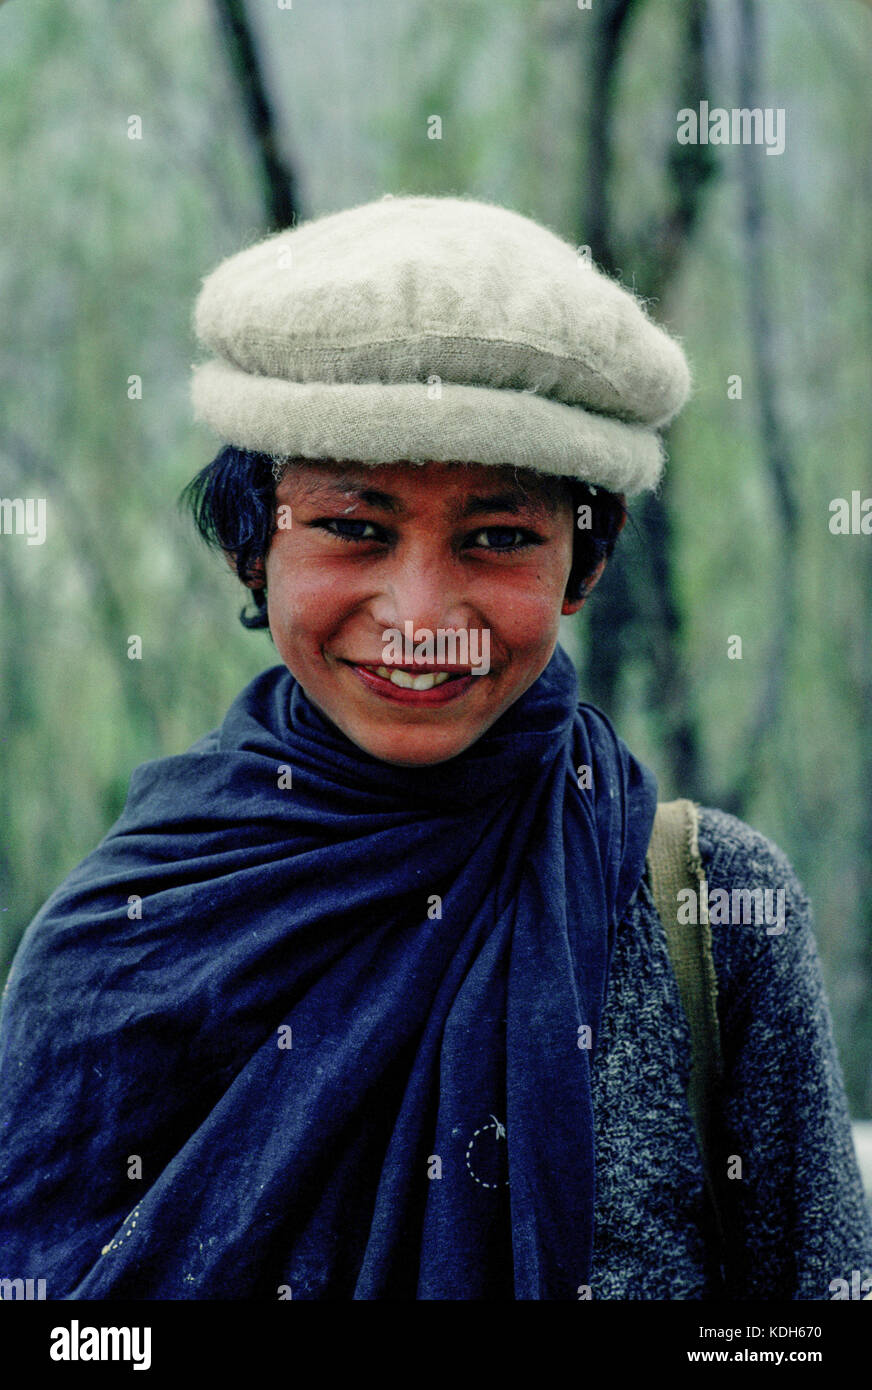 La vallée de l'Indus au Pakistan, 1990 ; Portrait de jeune garçon du village dans la vallée de Shikar. Banque D'Images